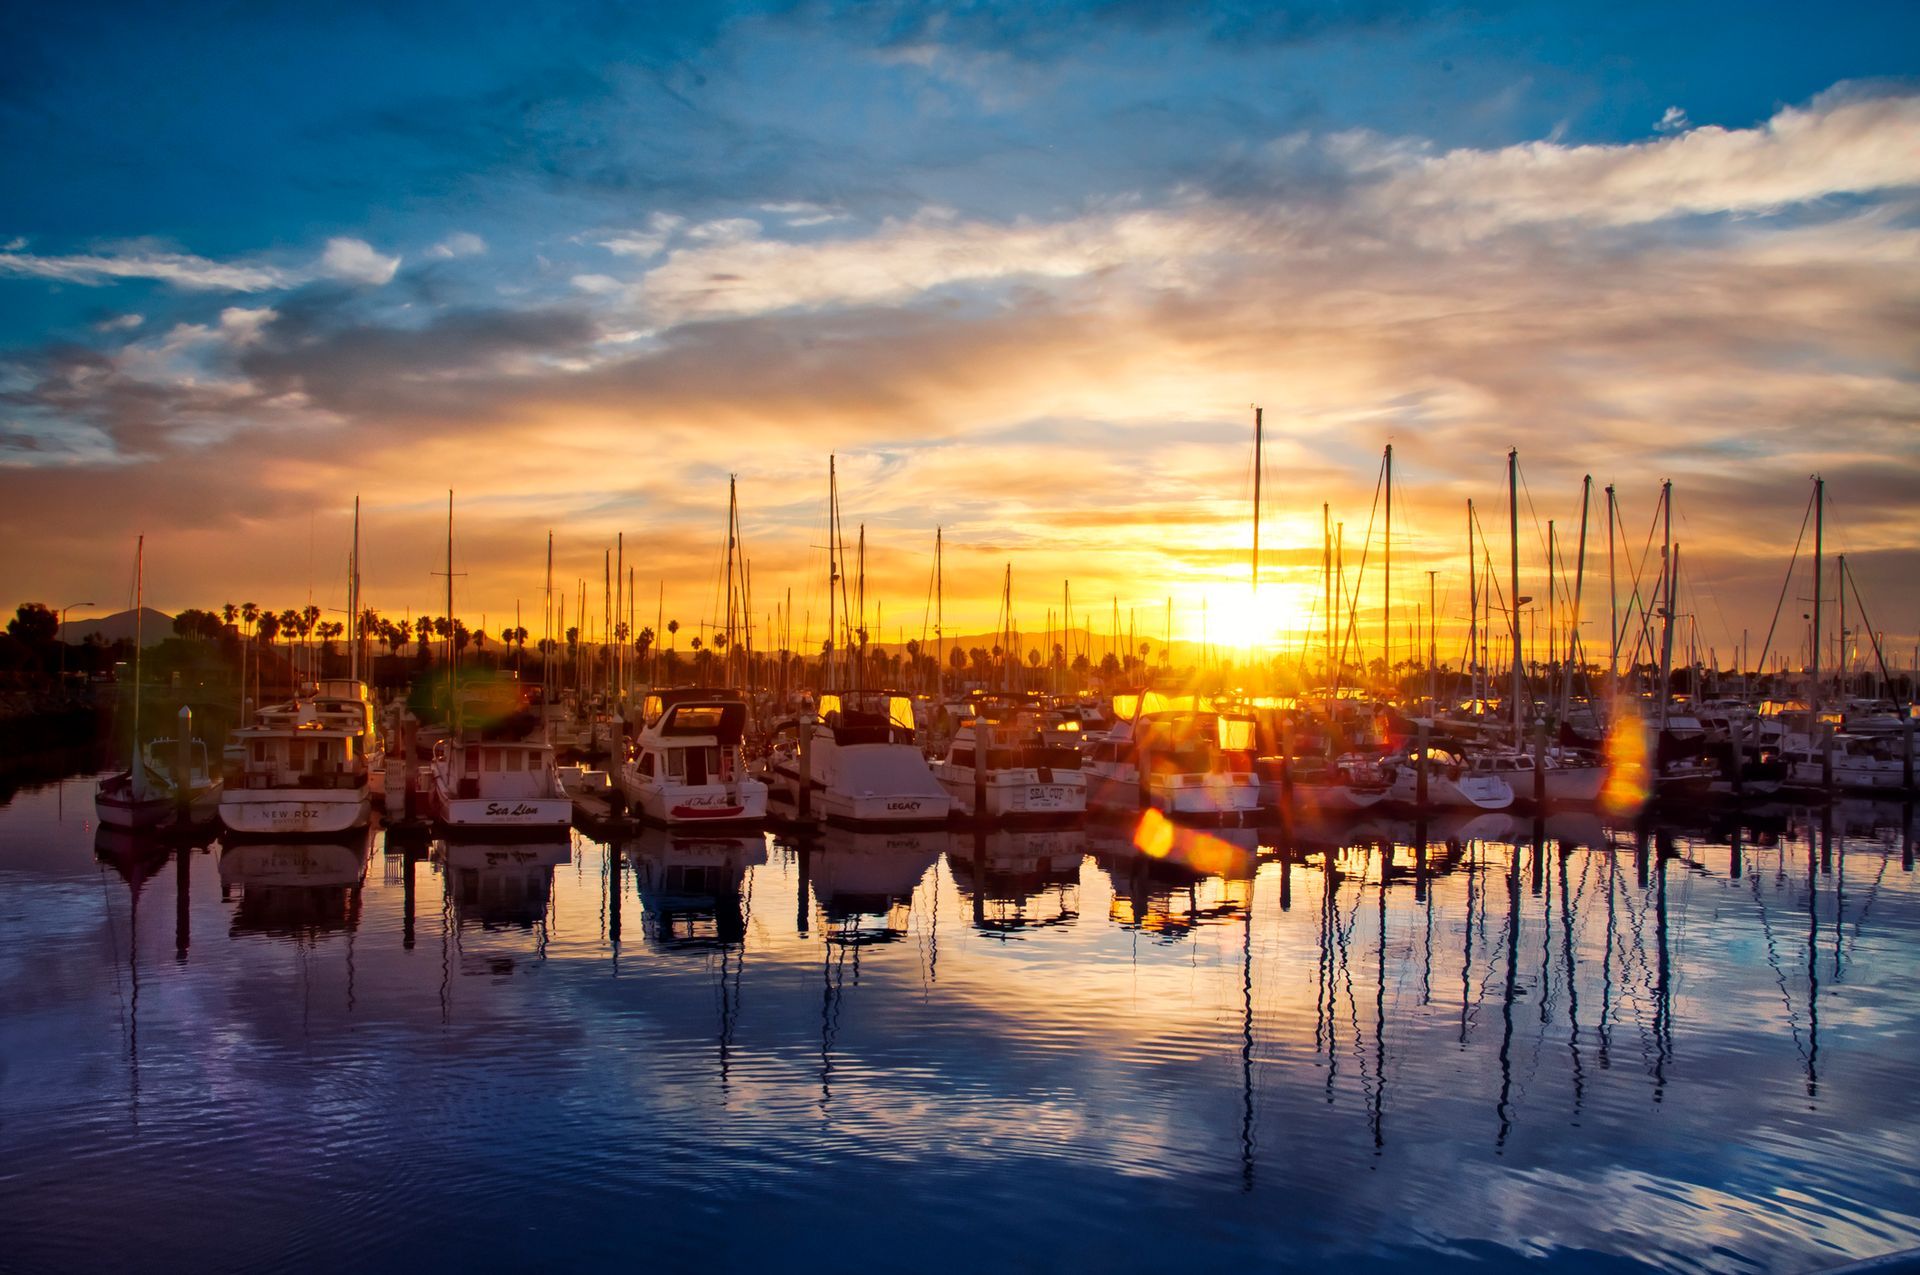 Sailboats & Sunrise | Chula Vista, CA | South Appliance Repair